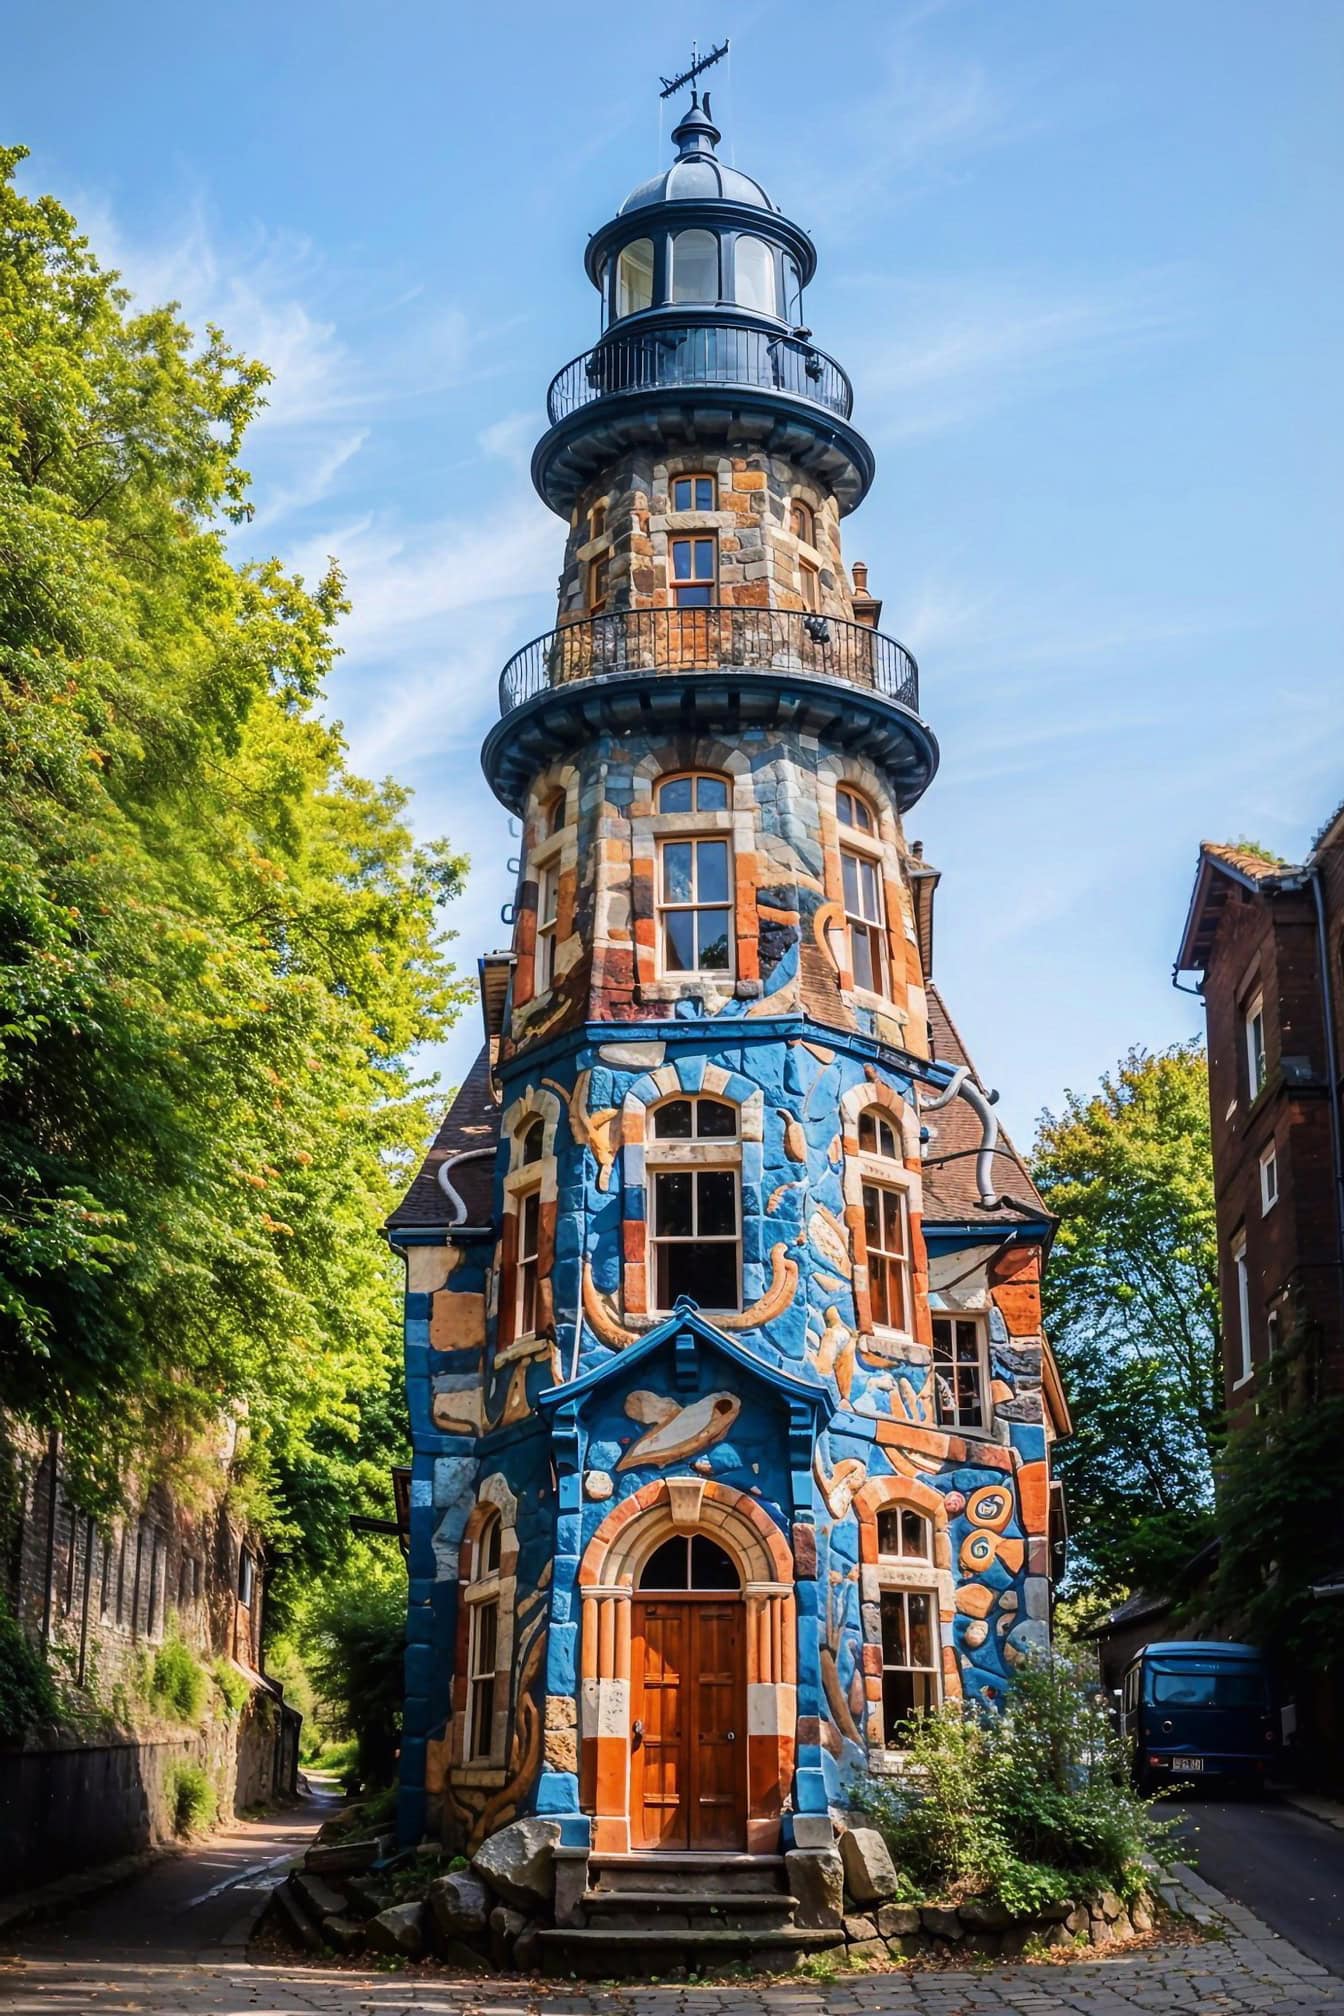 Egy világítótorony alakú ház, egy színes homlokzat hasonlít Antoni Gaudi építészetének stílusára